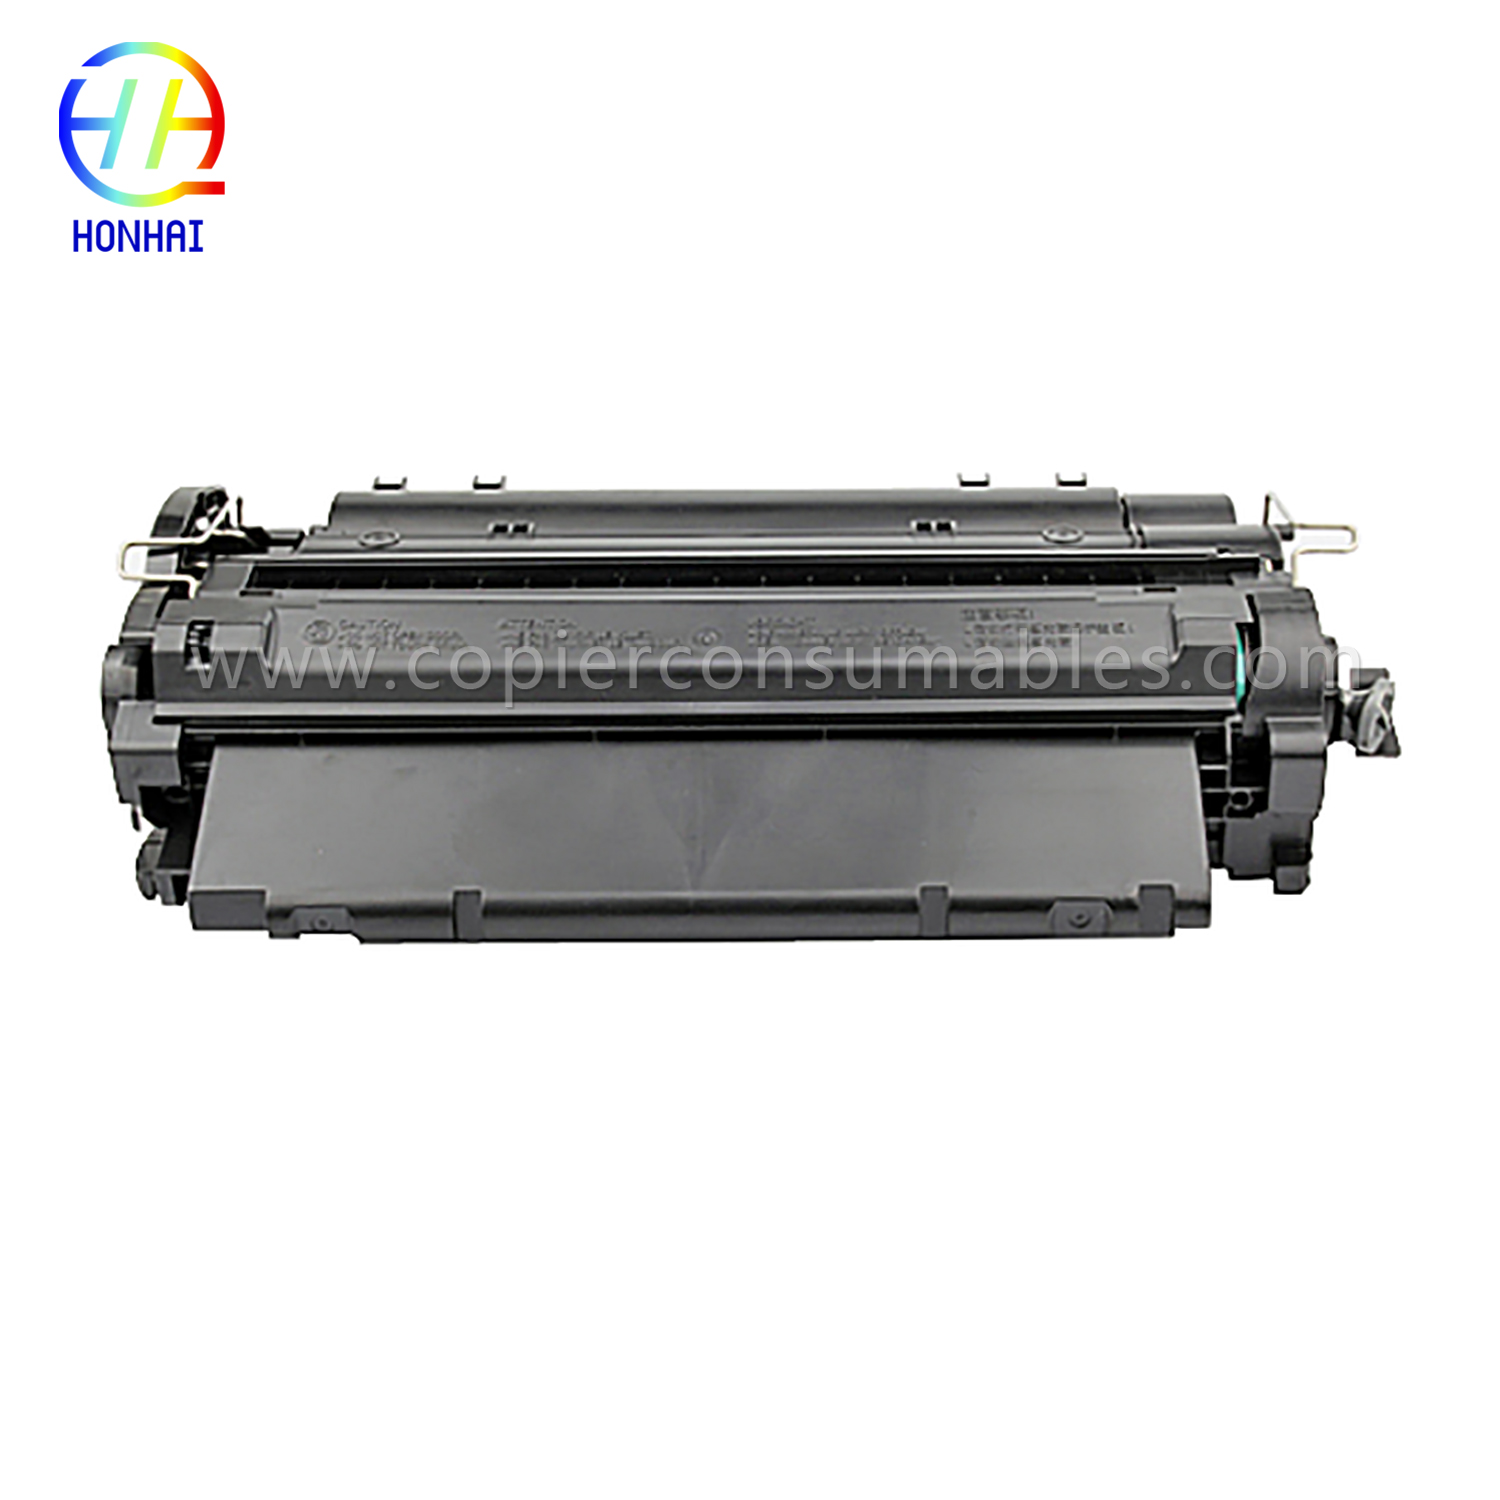 Color Toner Cartridges HP LaserJet LaserJet Pro MFP M521dn Enterprise P3015 (CE255X) -1 (2) 拷贝